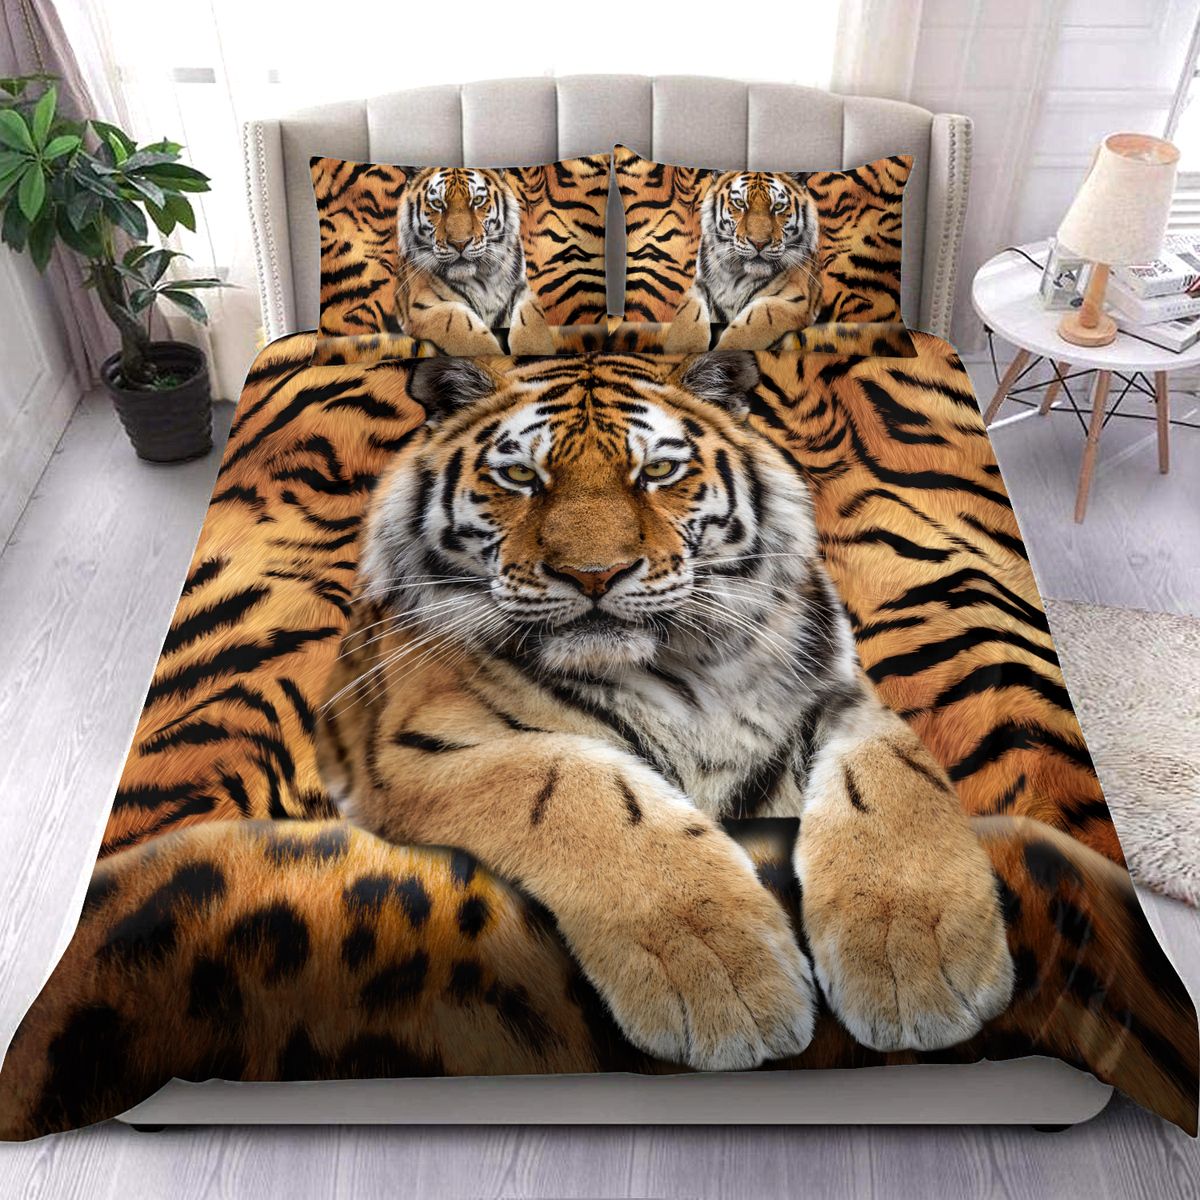 Cool tiger all over printed bedding set – Saleoff 300921